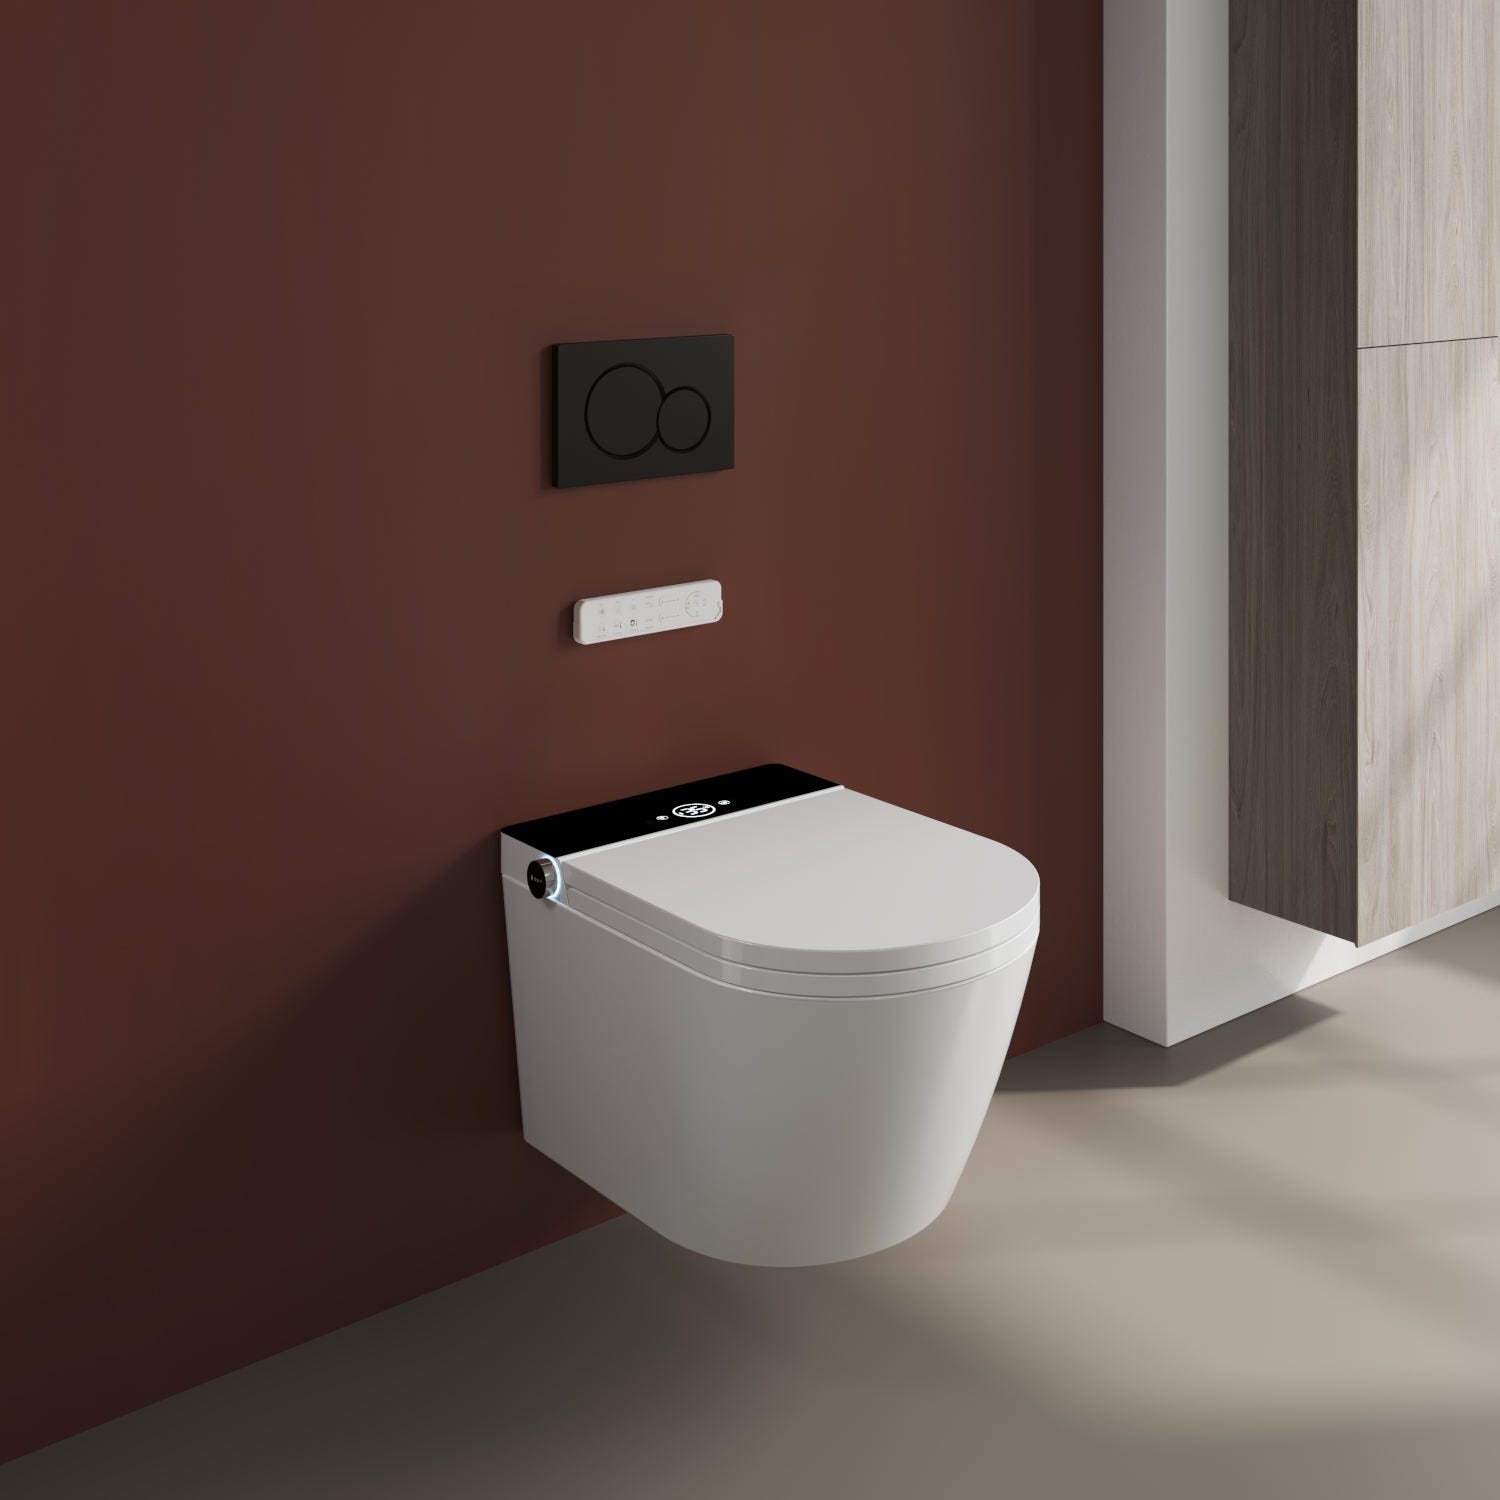 Mizubath - Toilette japonaise suspendu, Nettoyage par hydromassage, Séchage à l'air chaud, Télécommande et bouton I Modèle Rada display noir